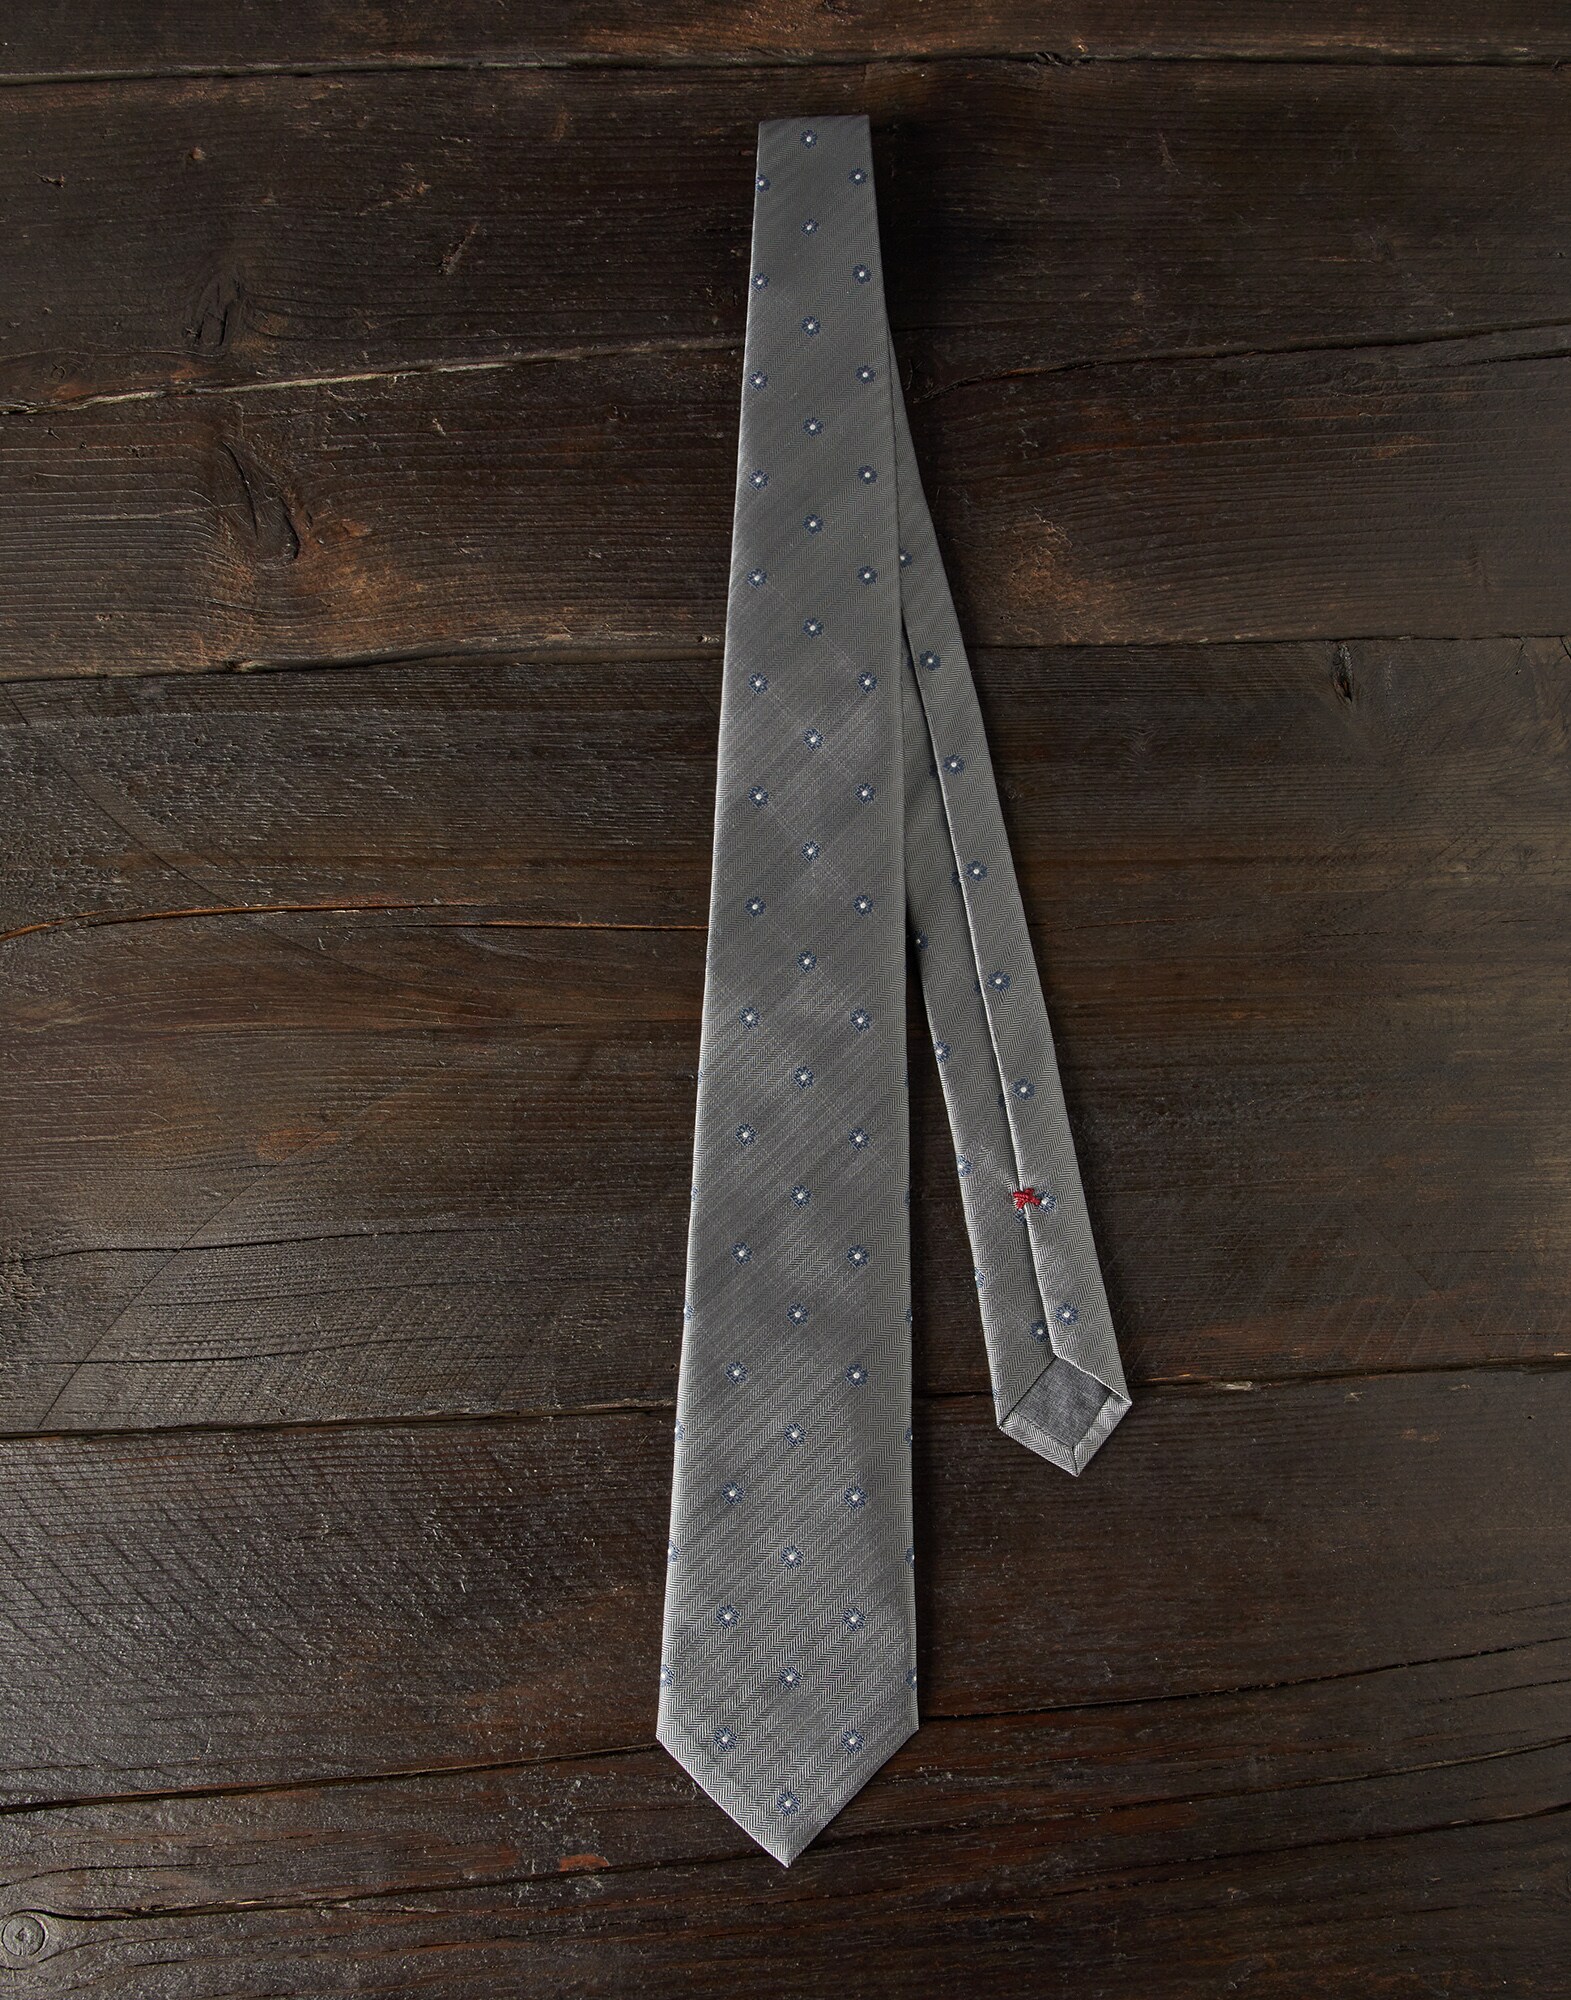 Silk necktie